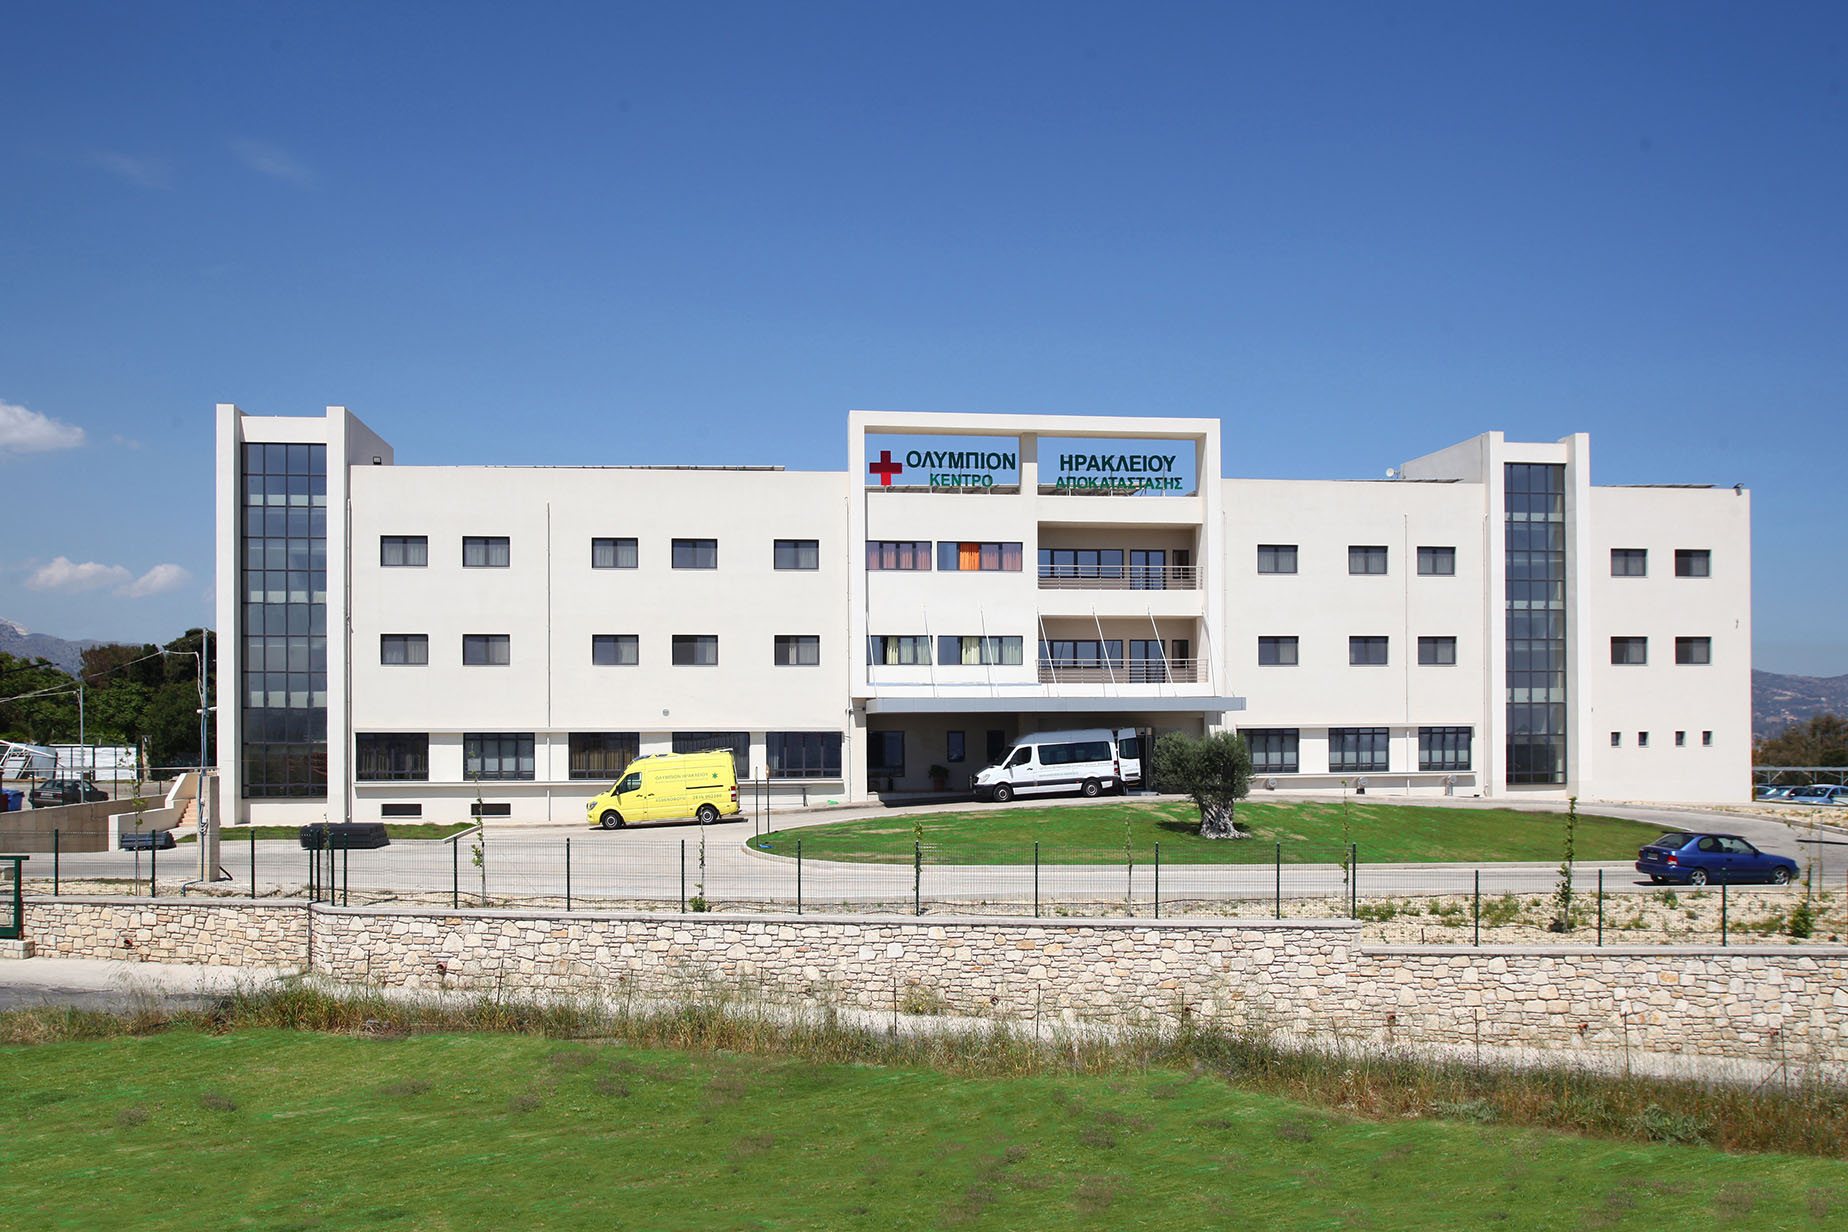 Το υπερσύγχρονο Κέντρο Αποθεραπείας και Αποκατάστασης ΟΛΥΜΠΙΟΝ Ηρακλείου